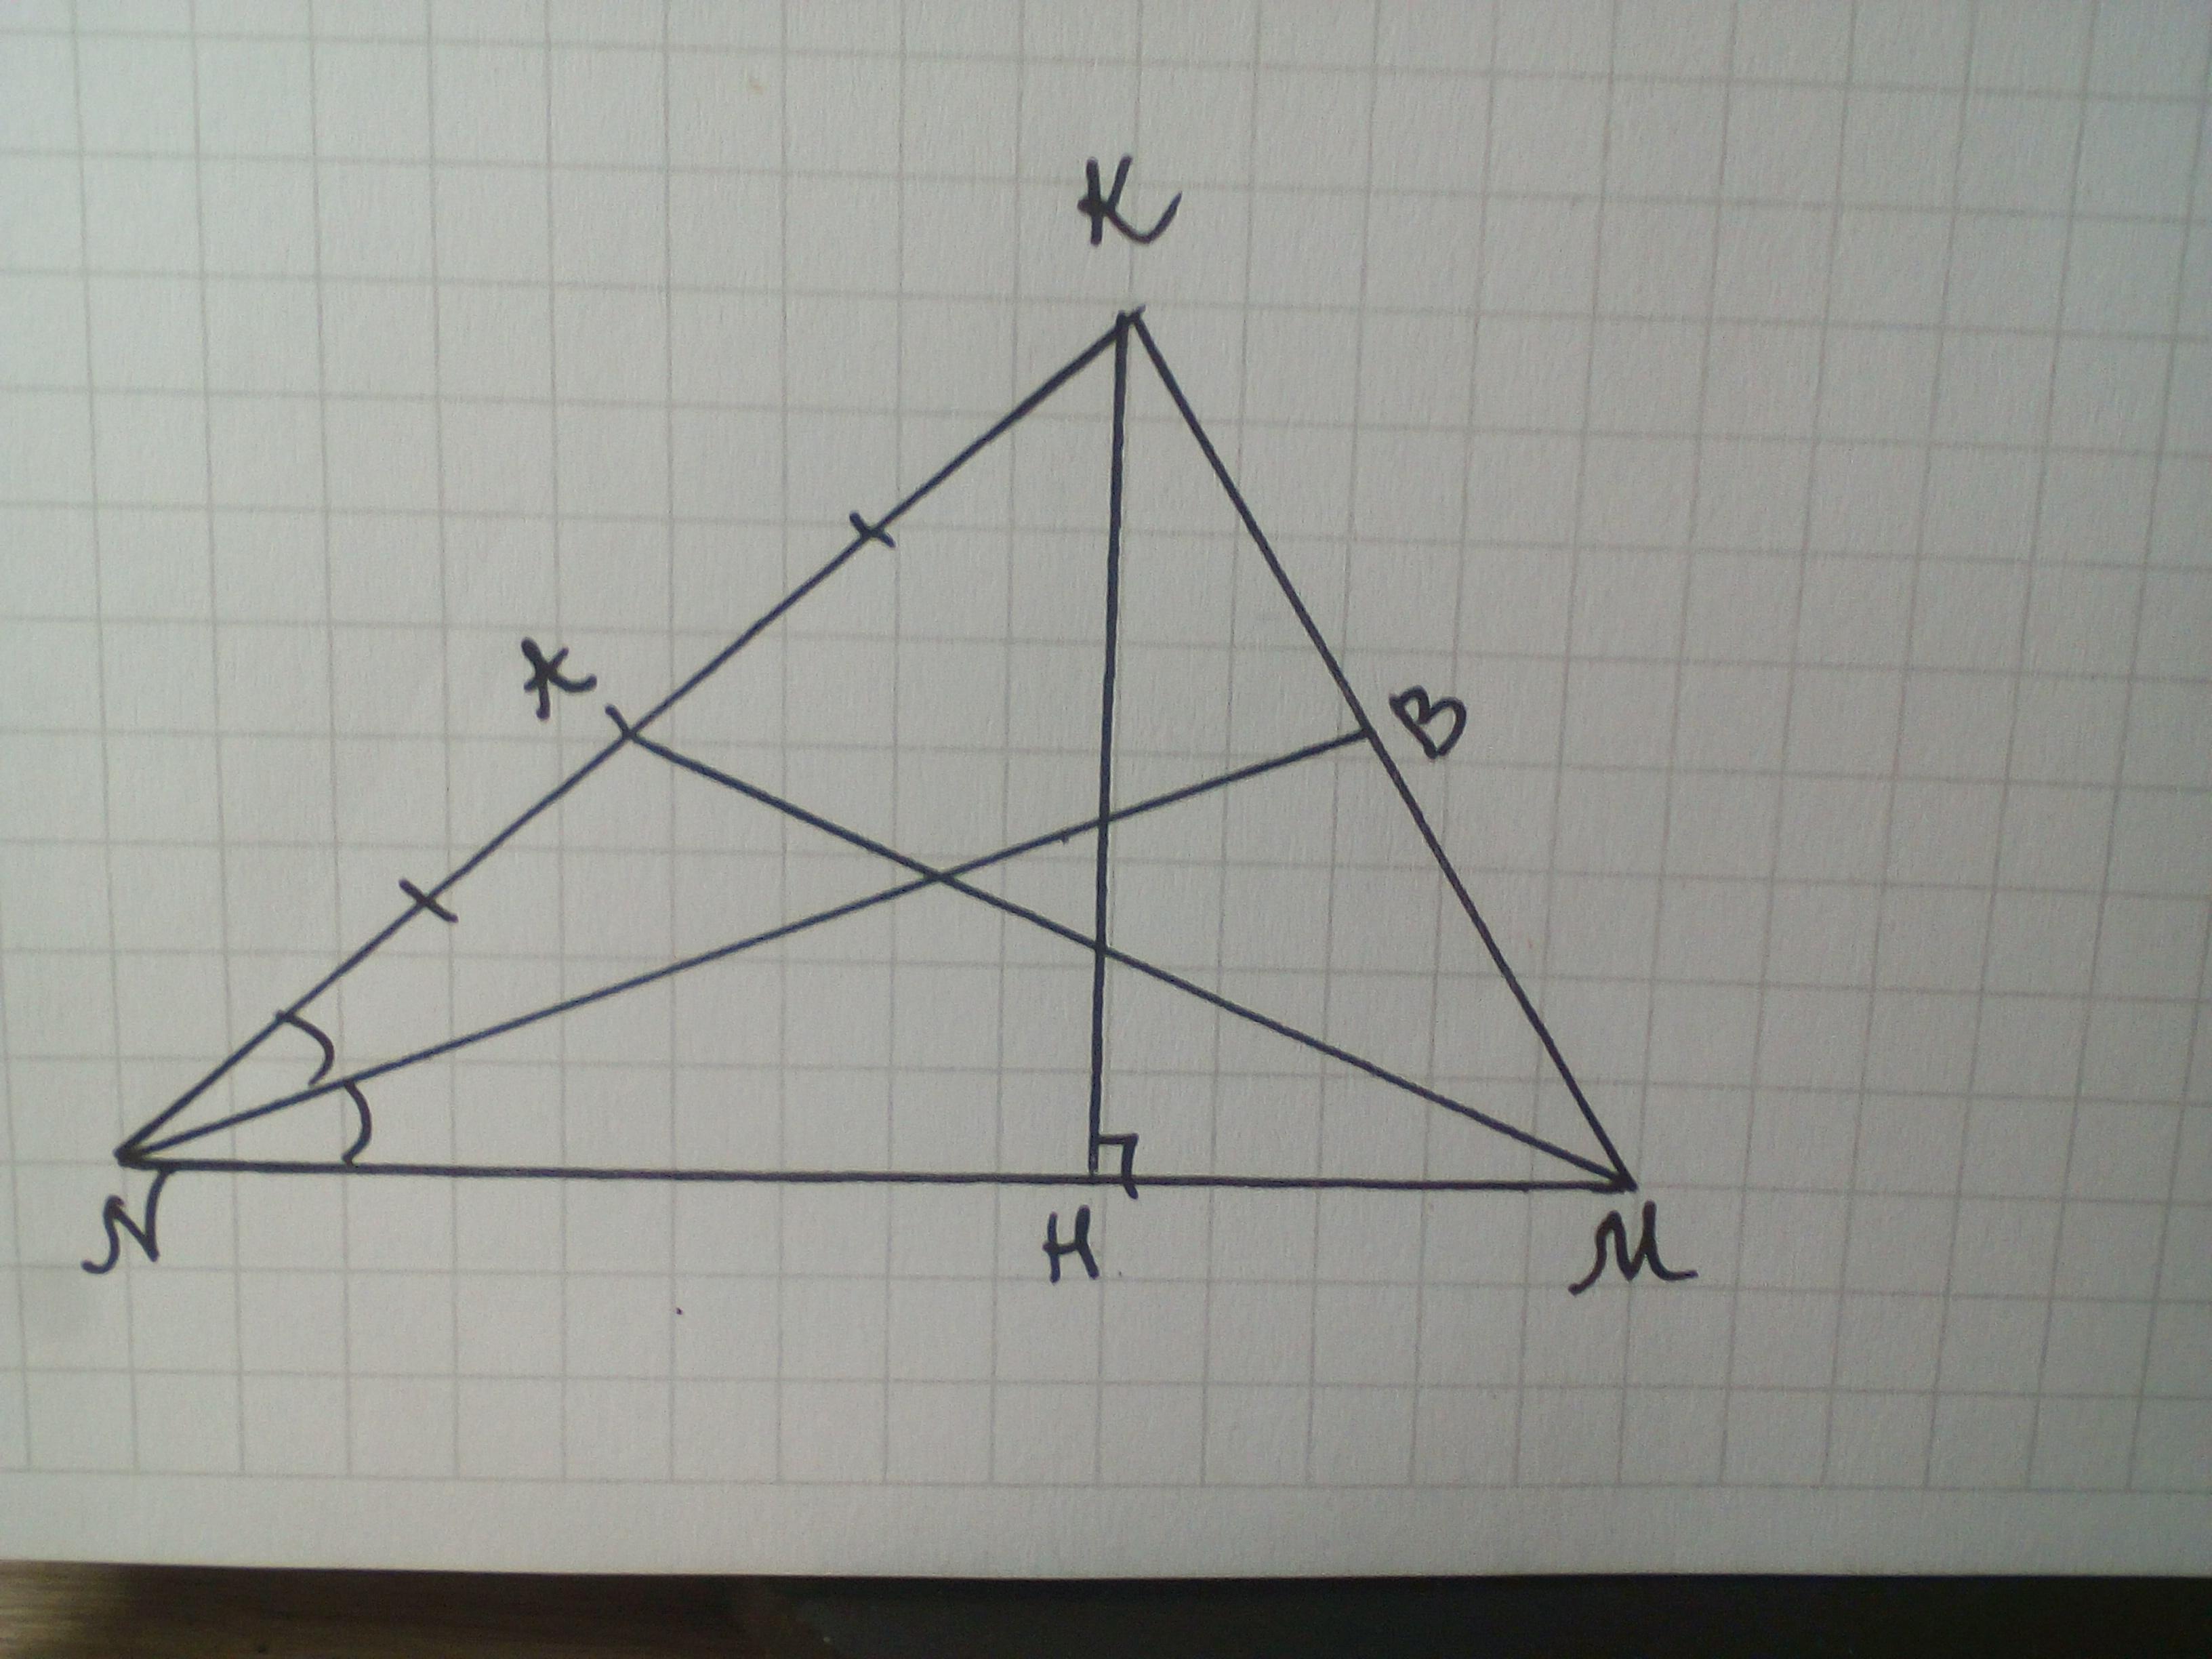 Построить образ тупоугольного треугольника. Медиана остроугольного треугольника. Медиана тупоугольного треугольника. Биссектриса тупоугольного треугольника. Начертить остроугольный треугольник ABC..